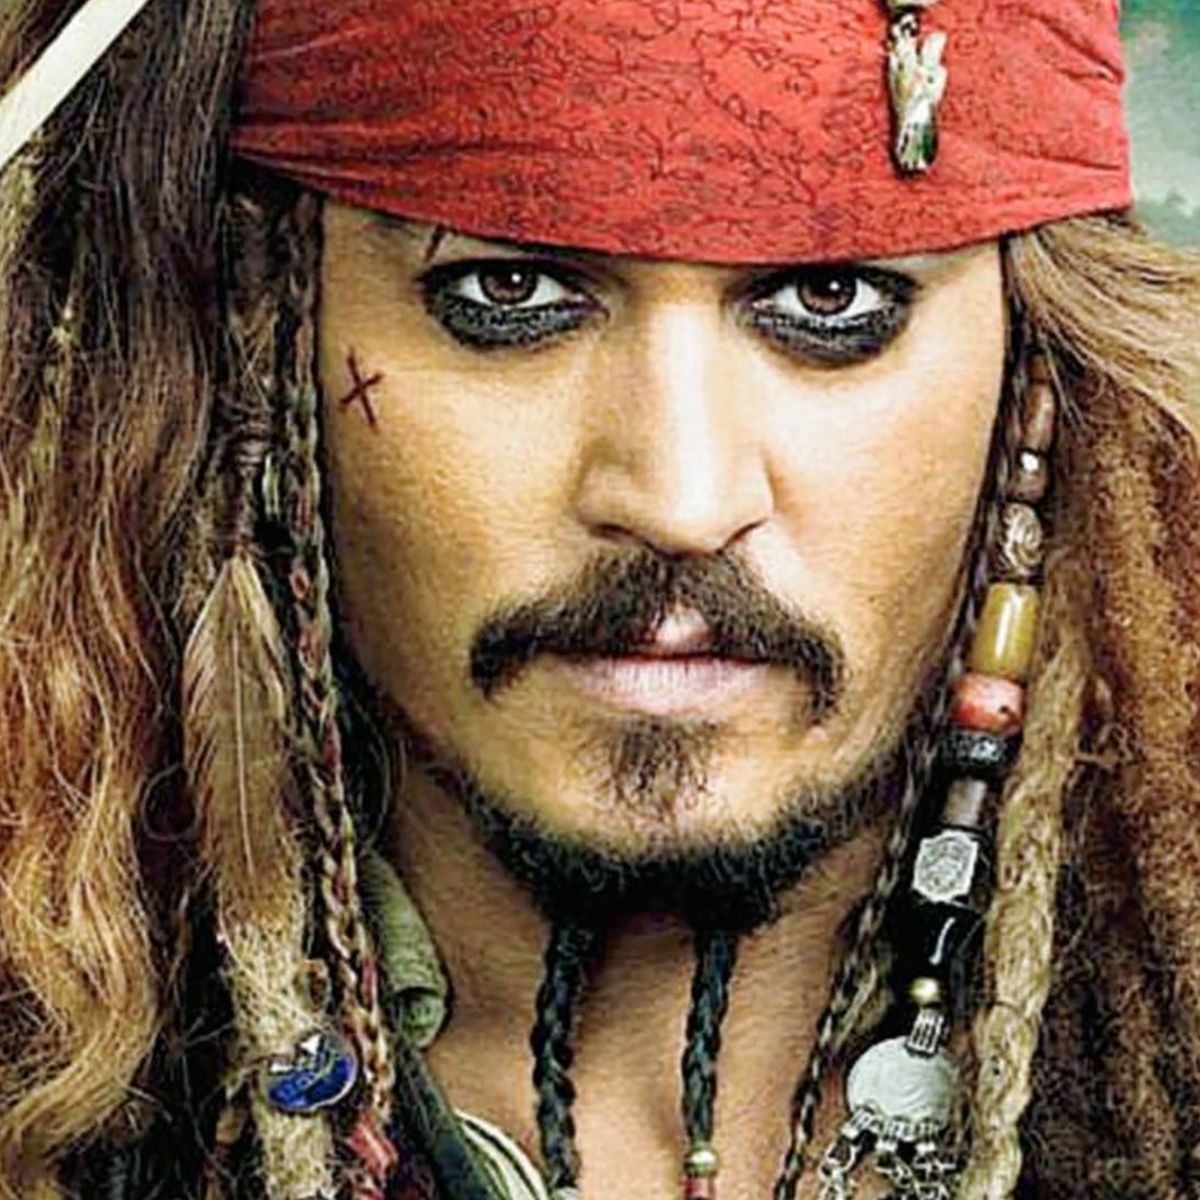 En Disney quieren seguir con Piratas del Caribe, con o sin Johnny